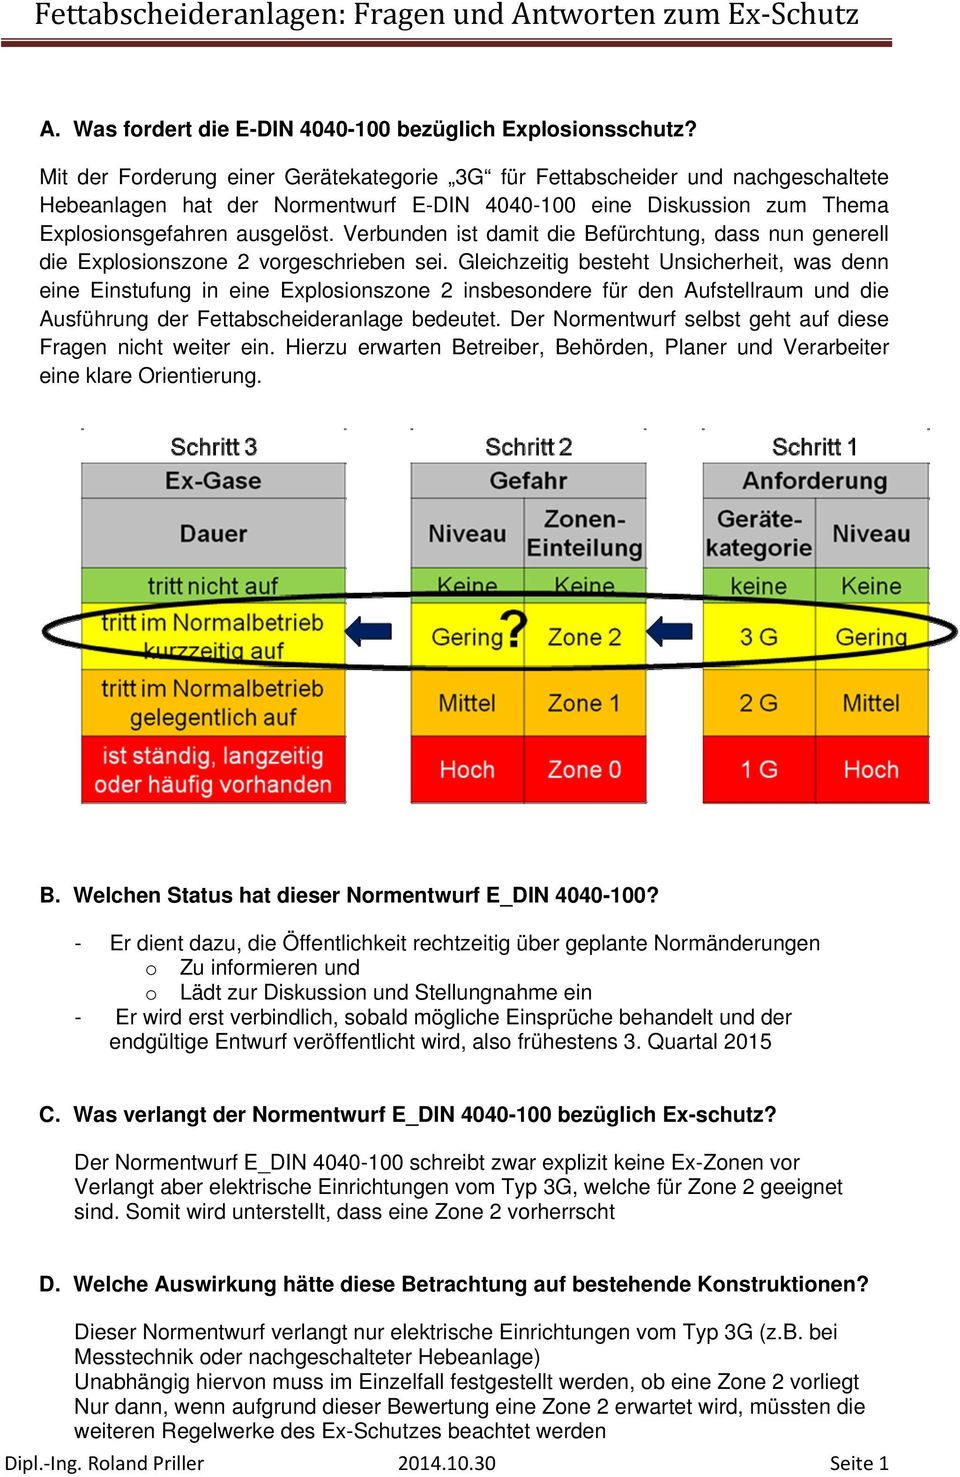 Fettabscheideranlagen: Fragen und Antworten zum Ex Schutz - PDF